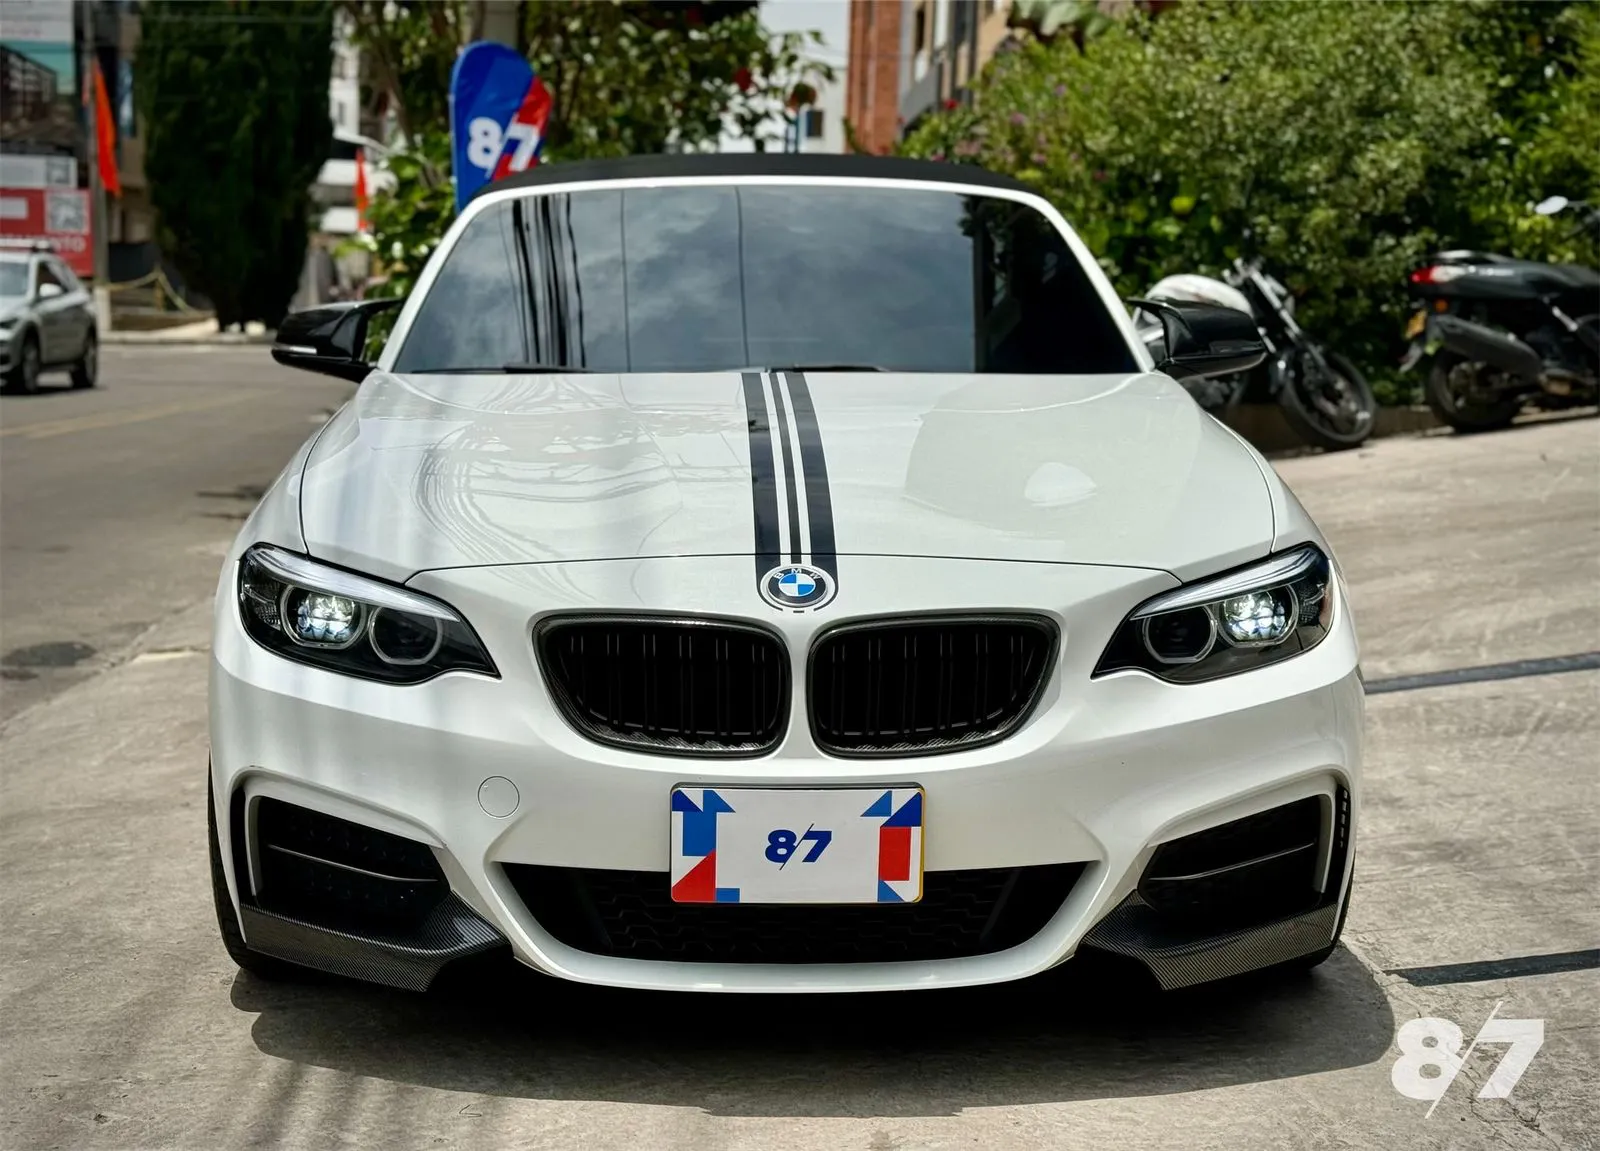 BMW CARROS M240i F23 Cabriolet 2021